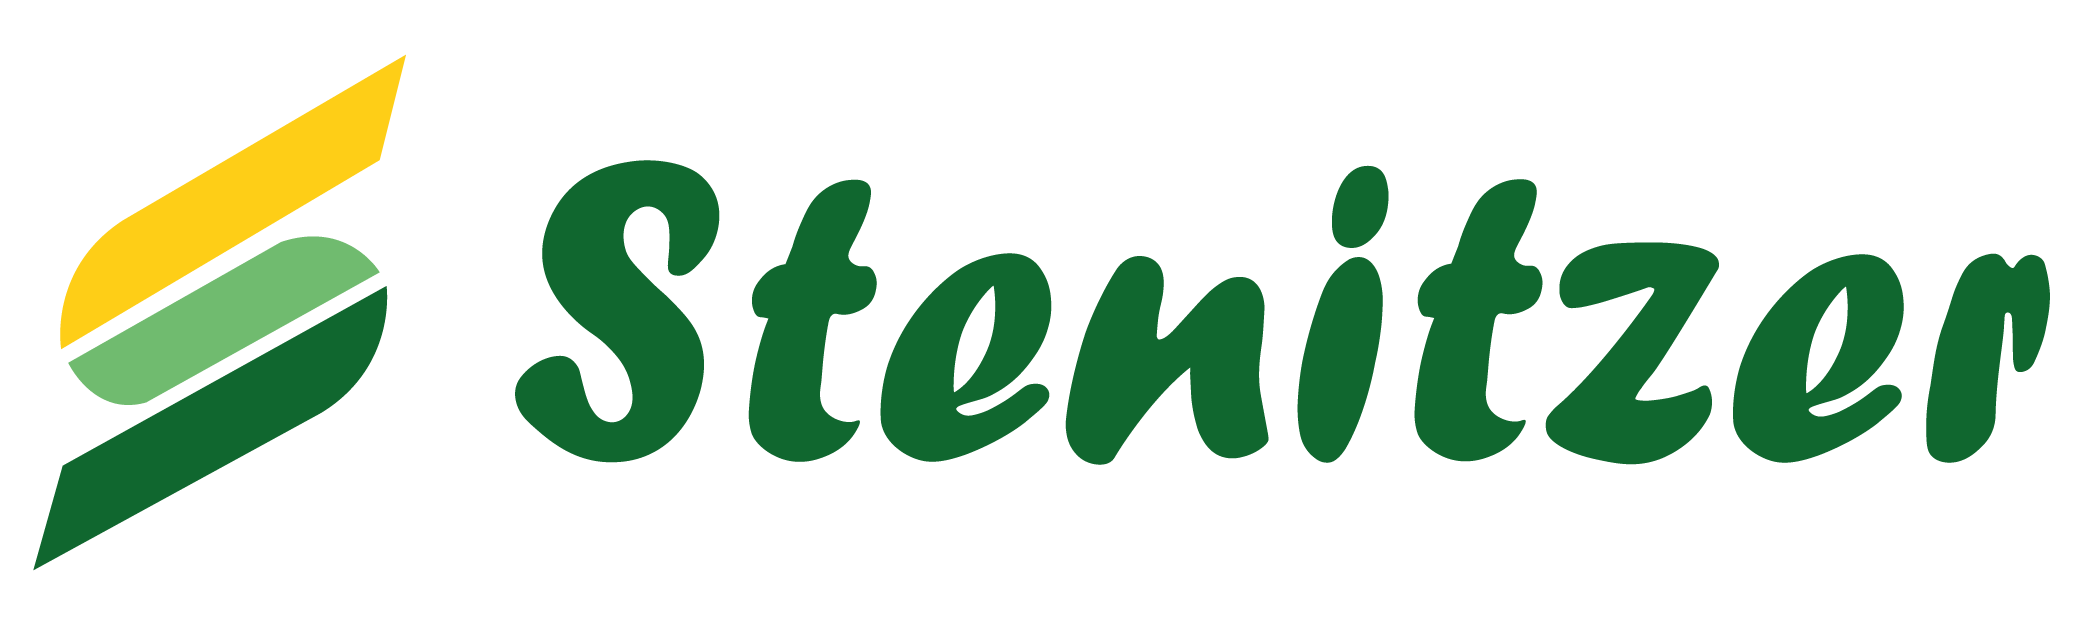 Stenitzer_Logo_01